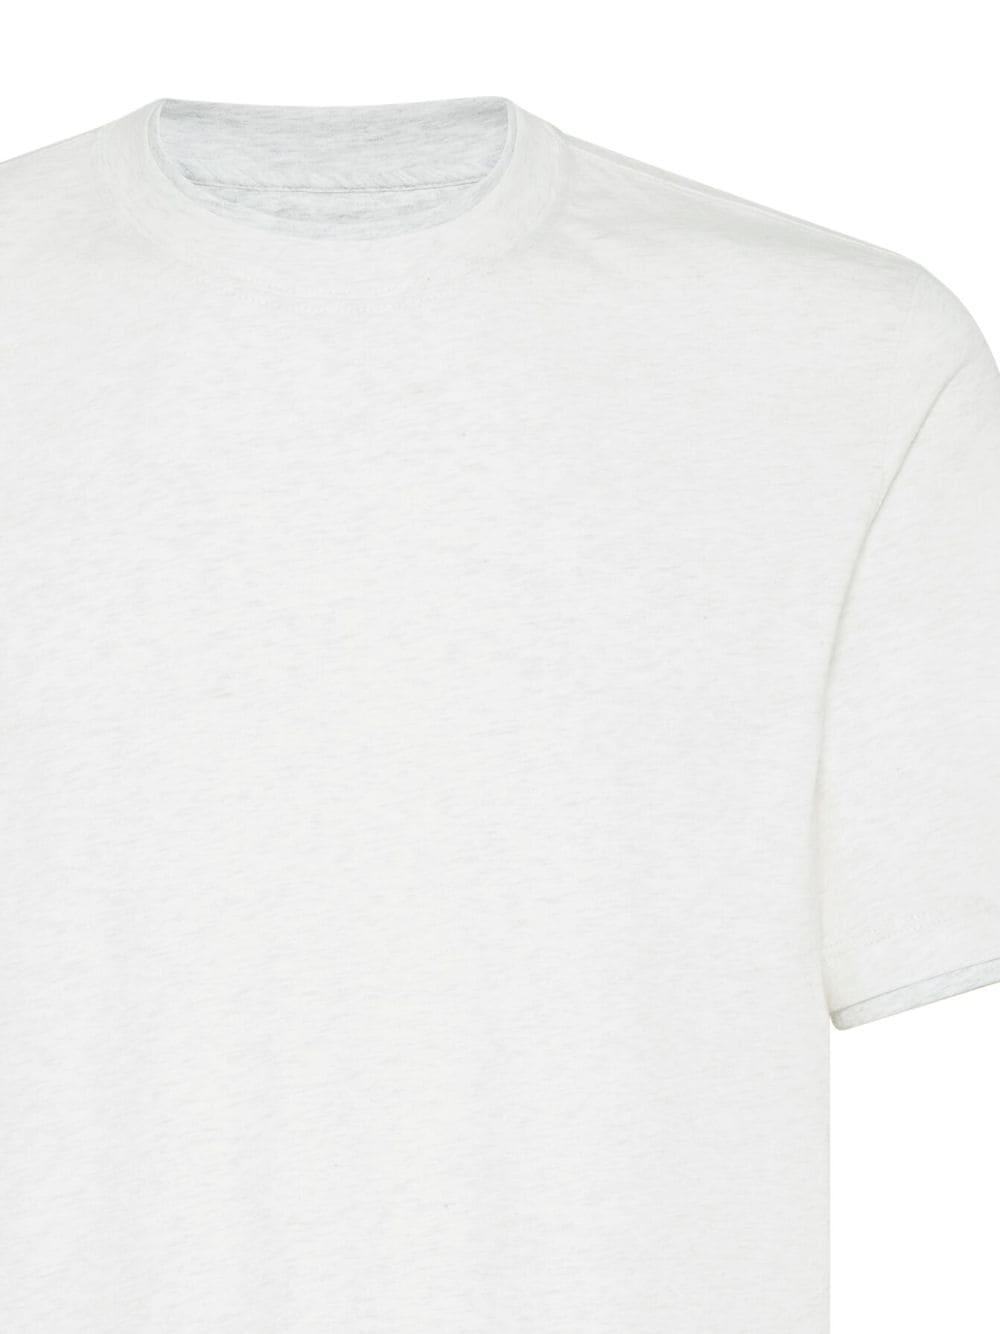 T-shirt gris perle avec logo